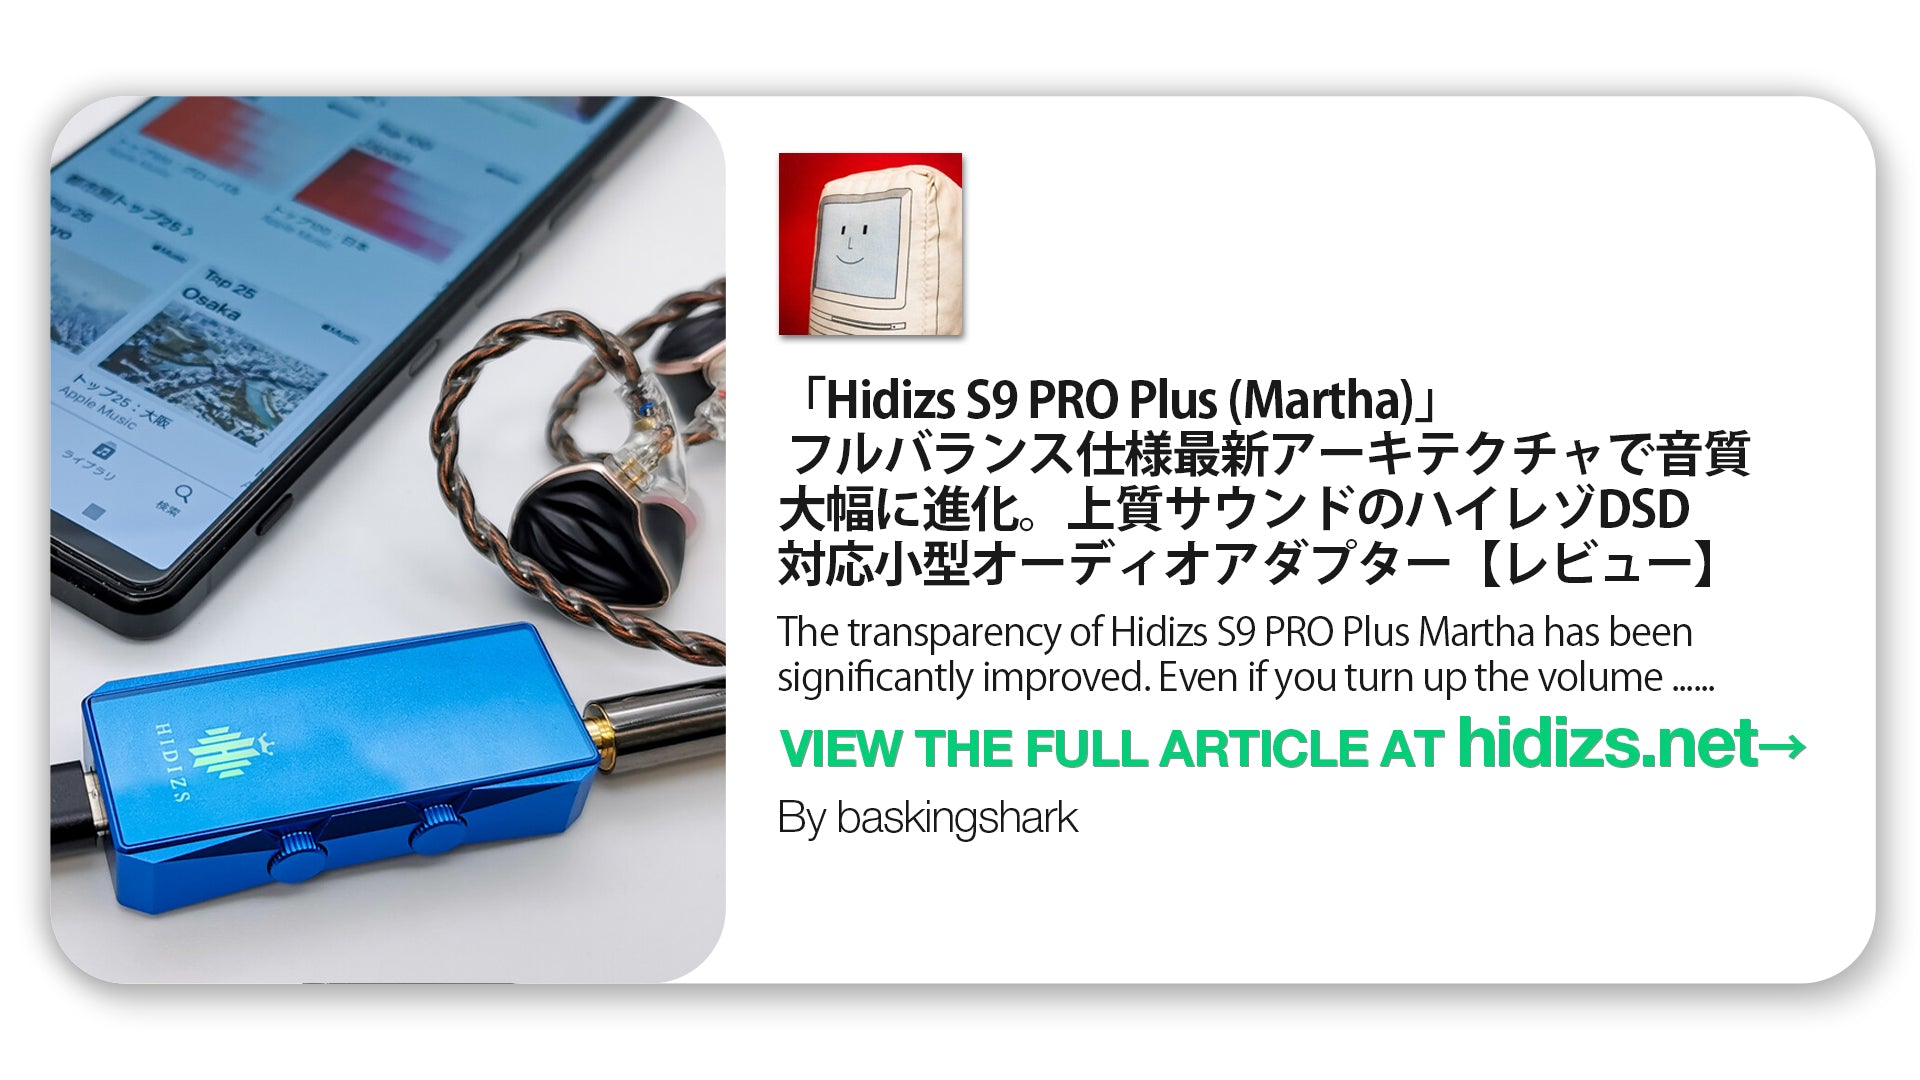 Hidizs S9 Pro Plus Martha Review - bisonicr